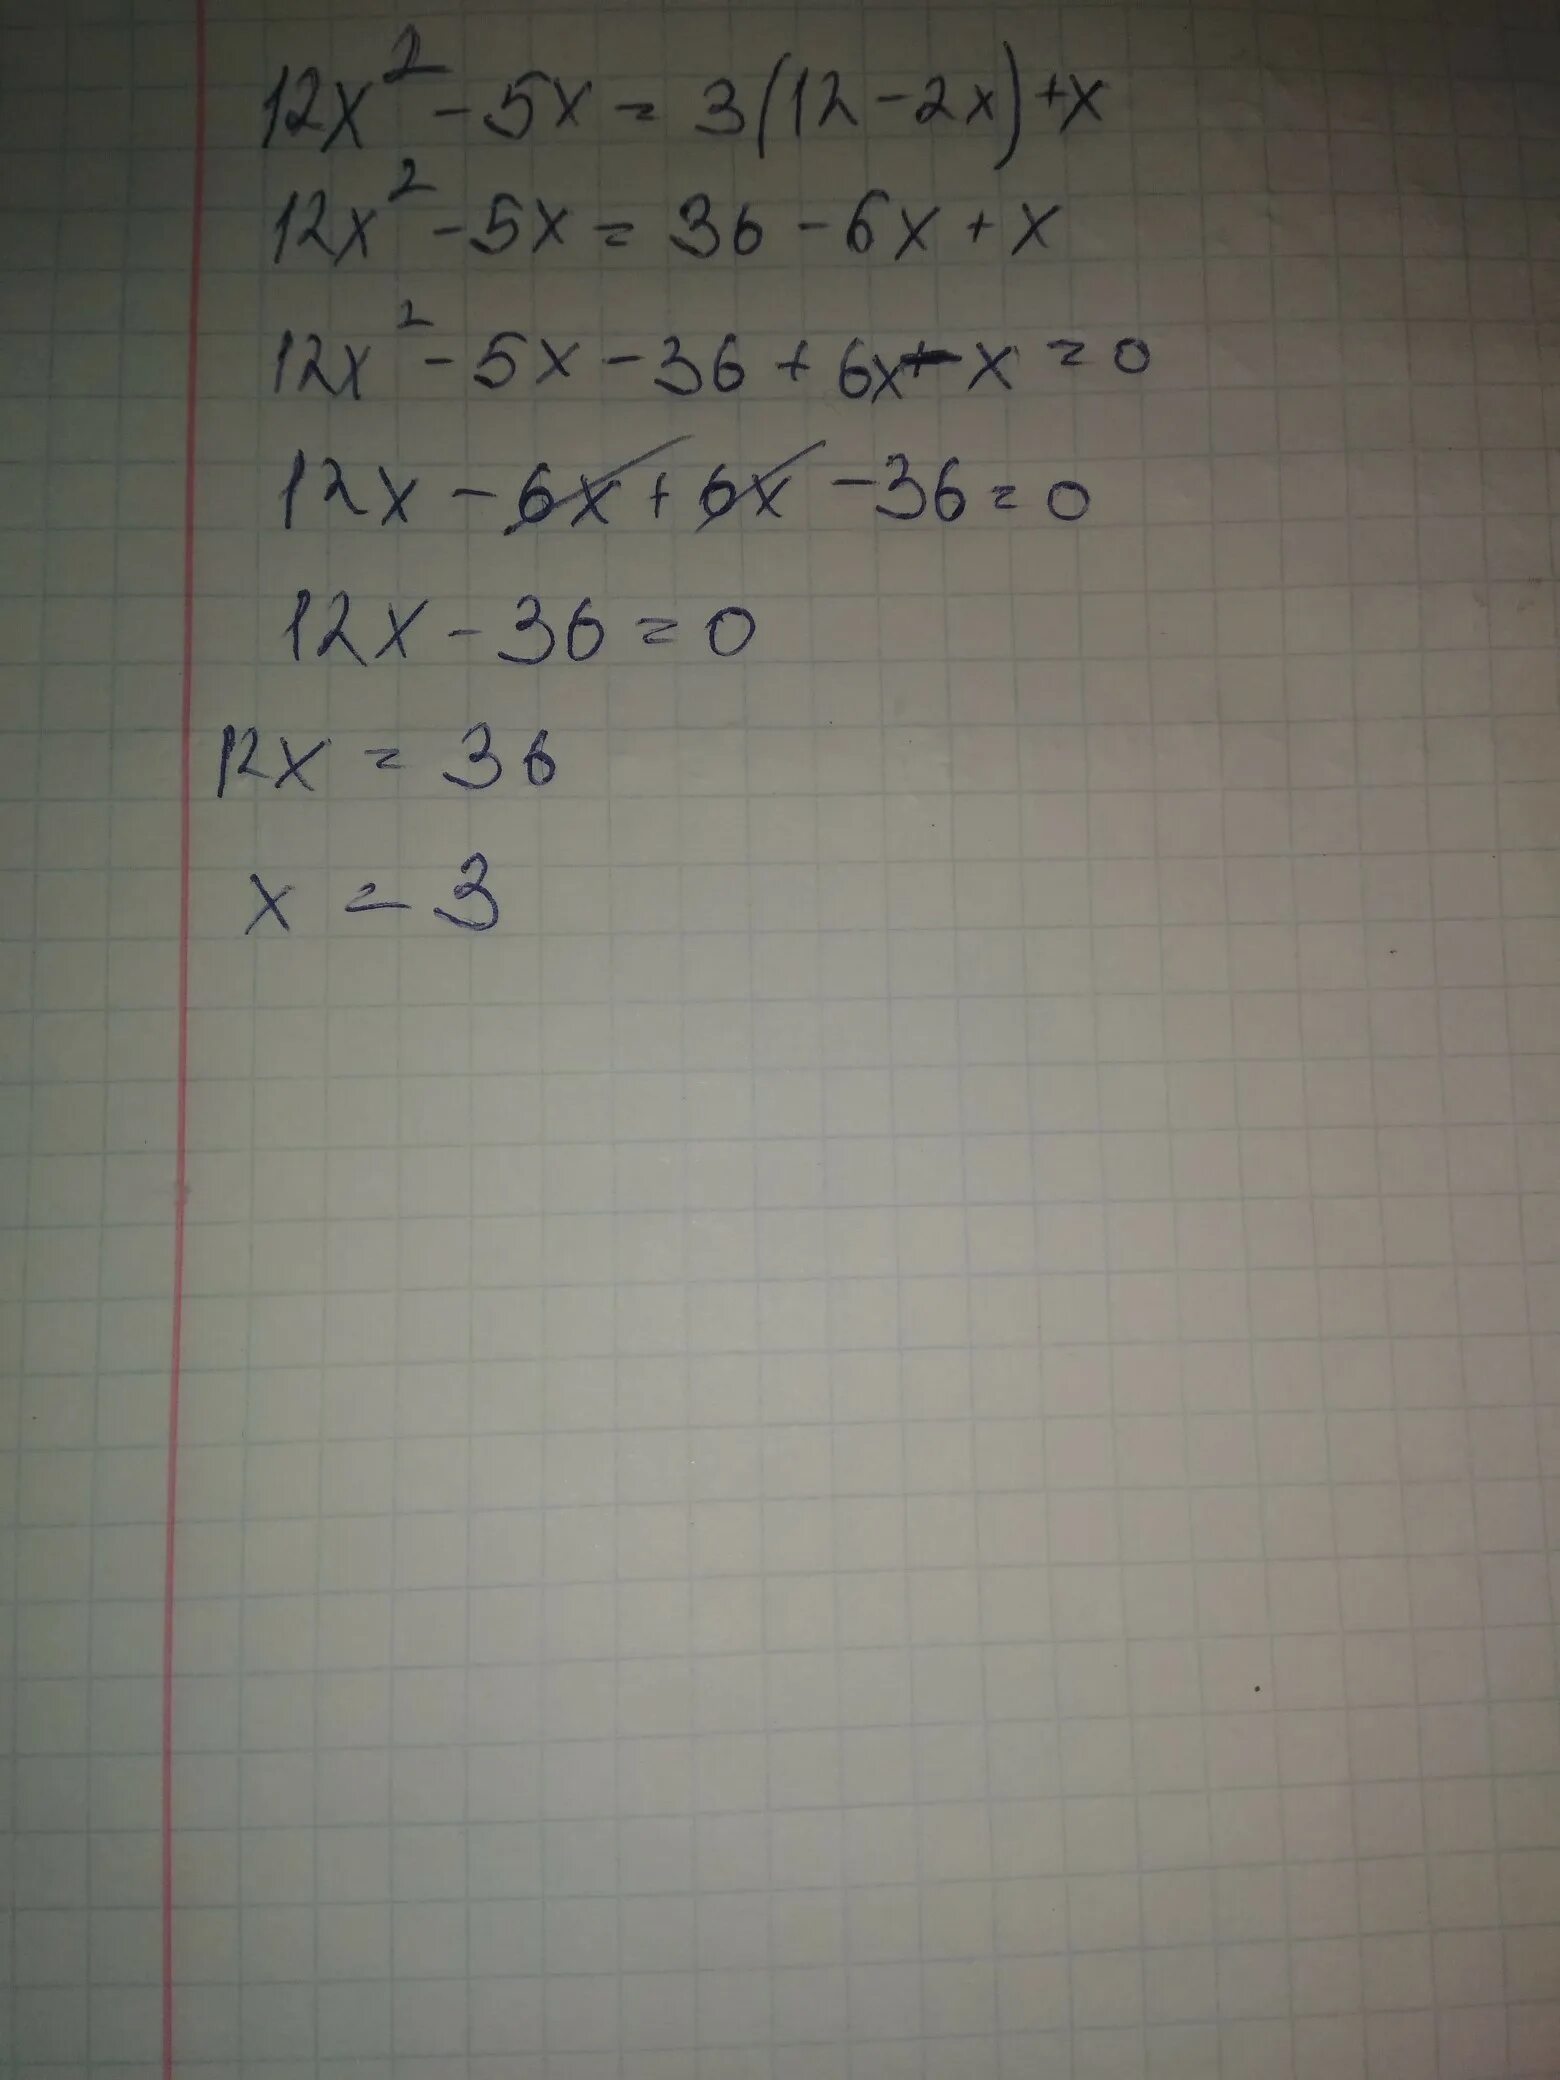 X-9=-2x Найдите корень уравнения. X 5/12 корень. Найдите корень уравнения 3(2-x)+2x=3x-4. Найдите корень уравнения 3x-1/x+3-x-2/x-3 1. Найдите корень уравнения 3x 2 9x